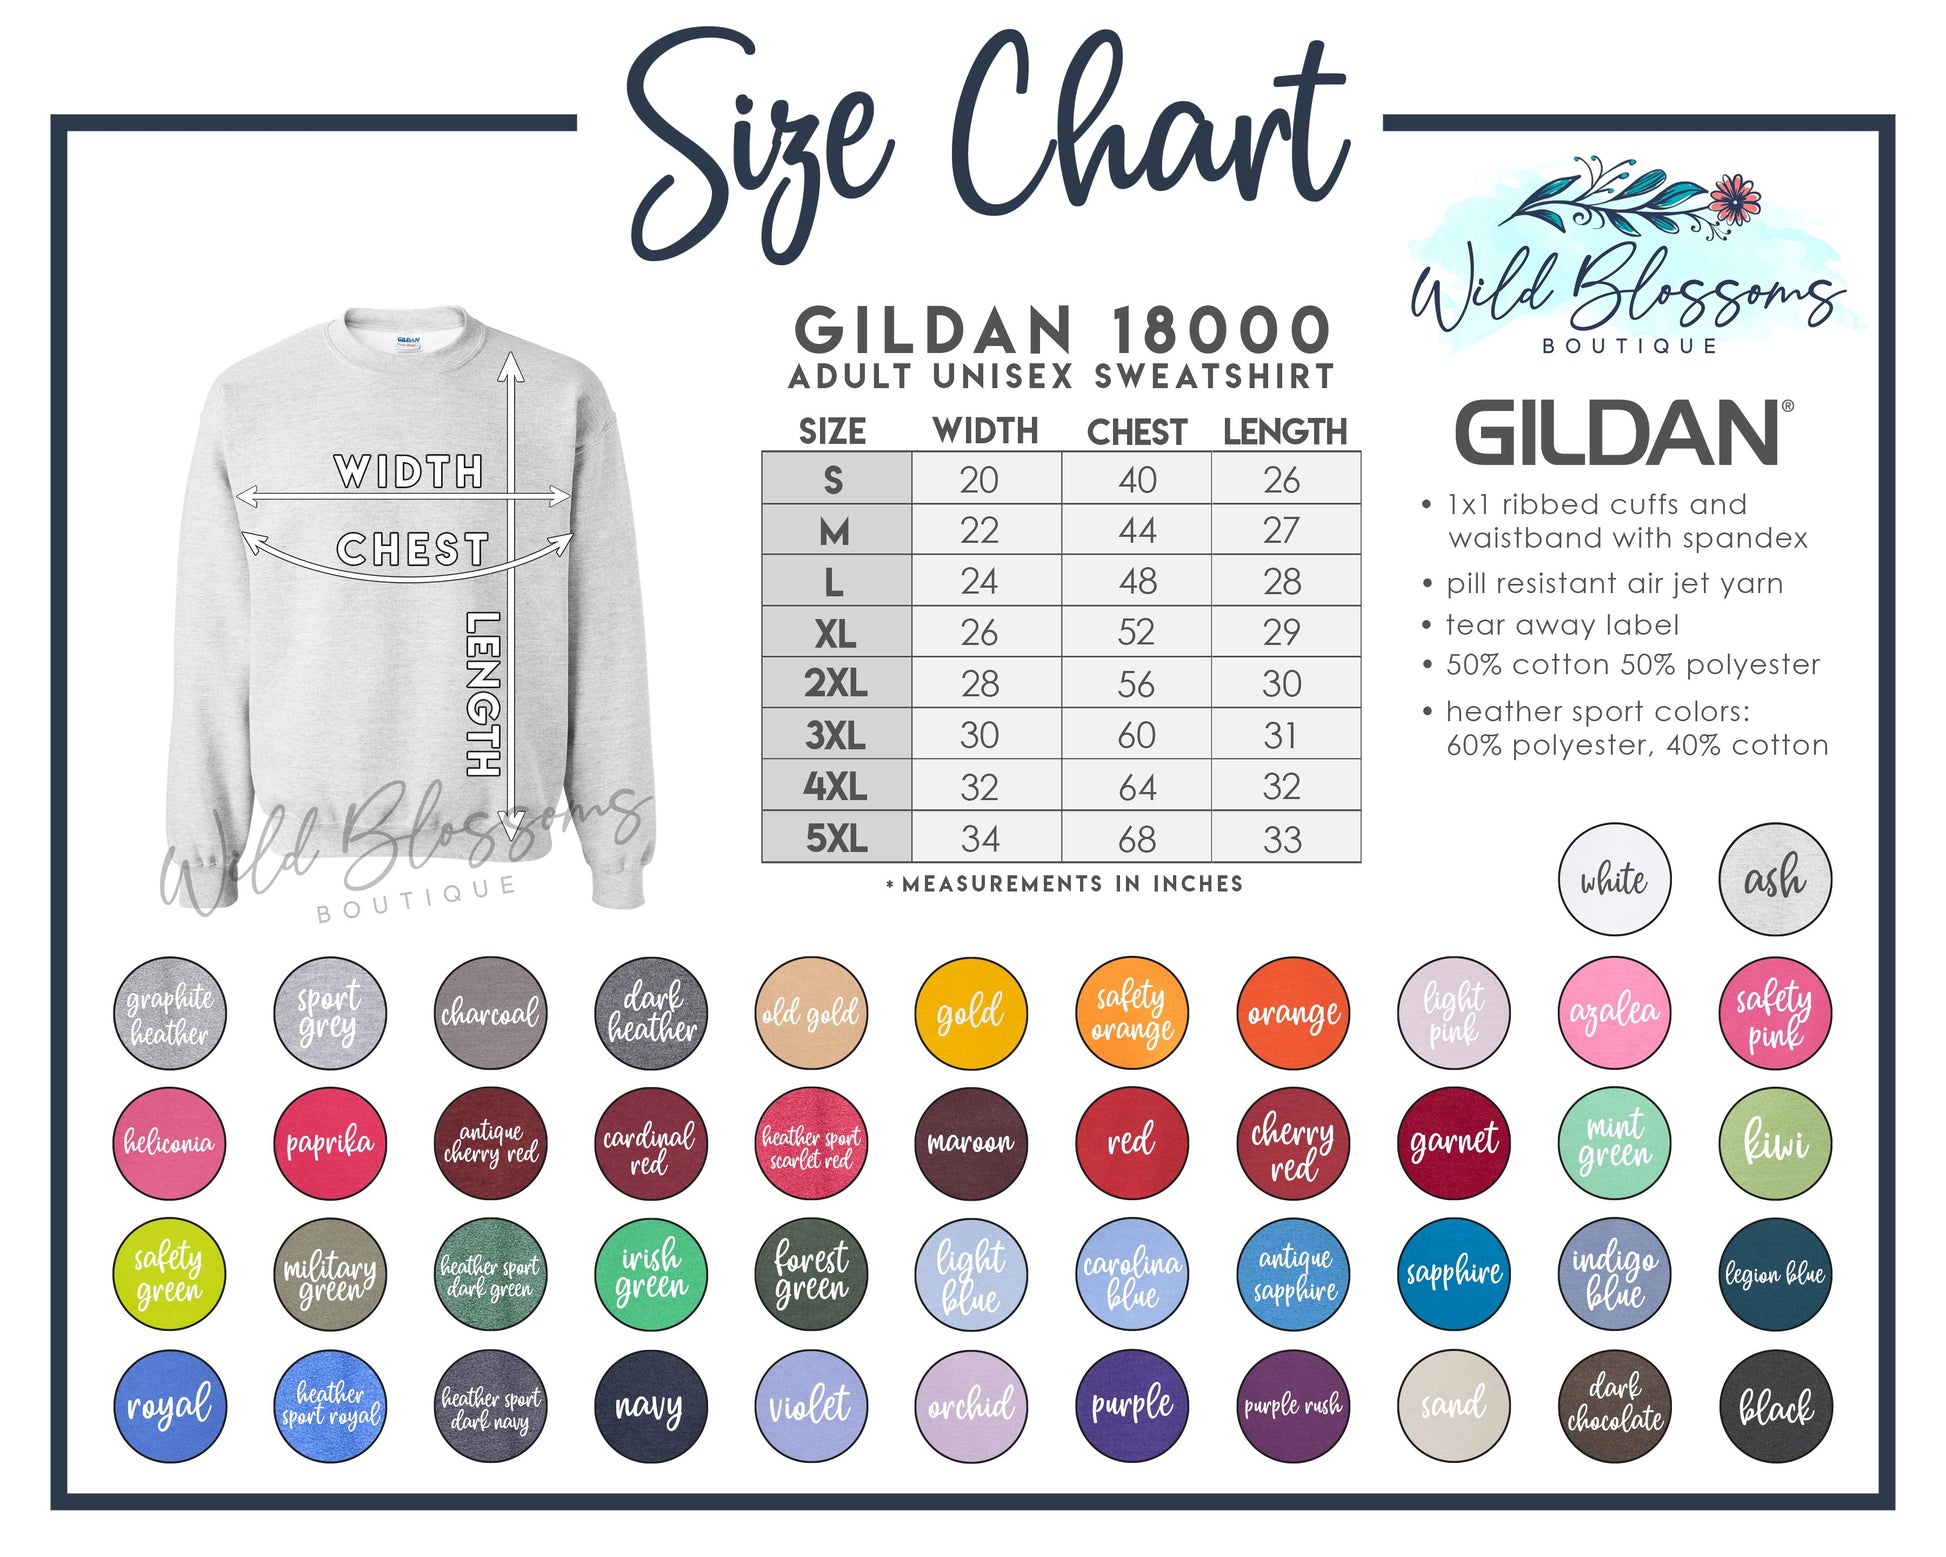 Gildan 18000 Adult Unisex Sweatshirt